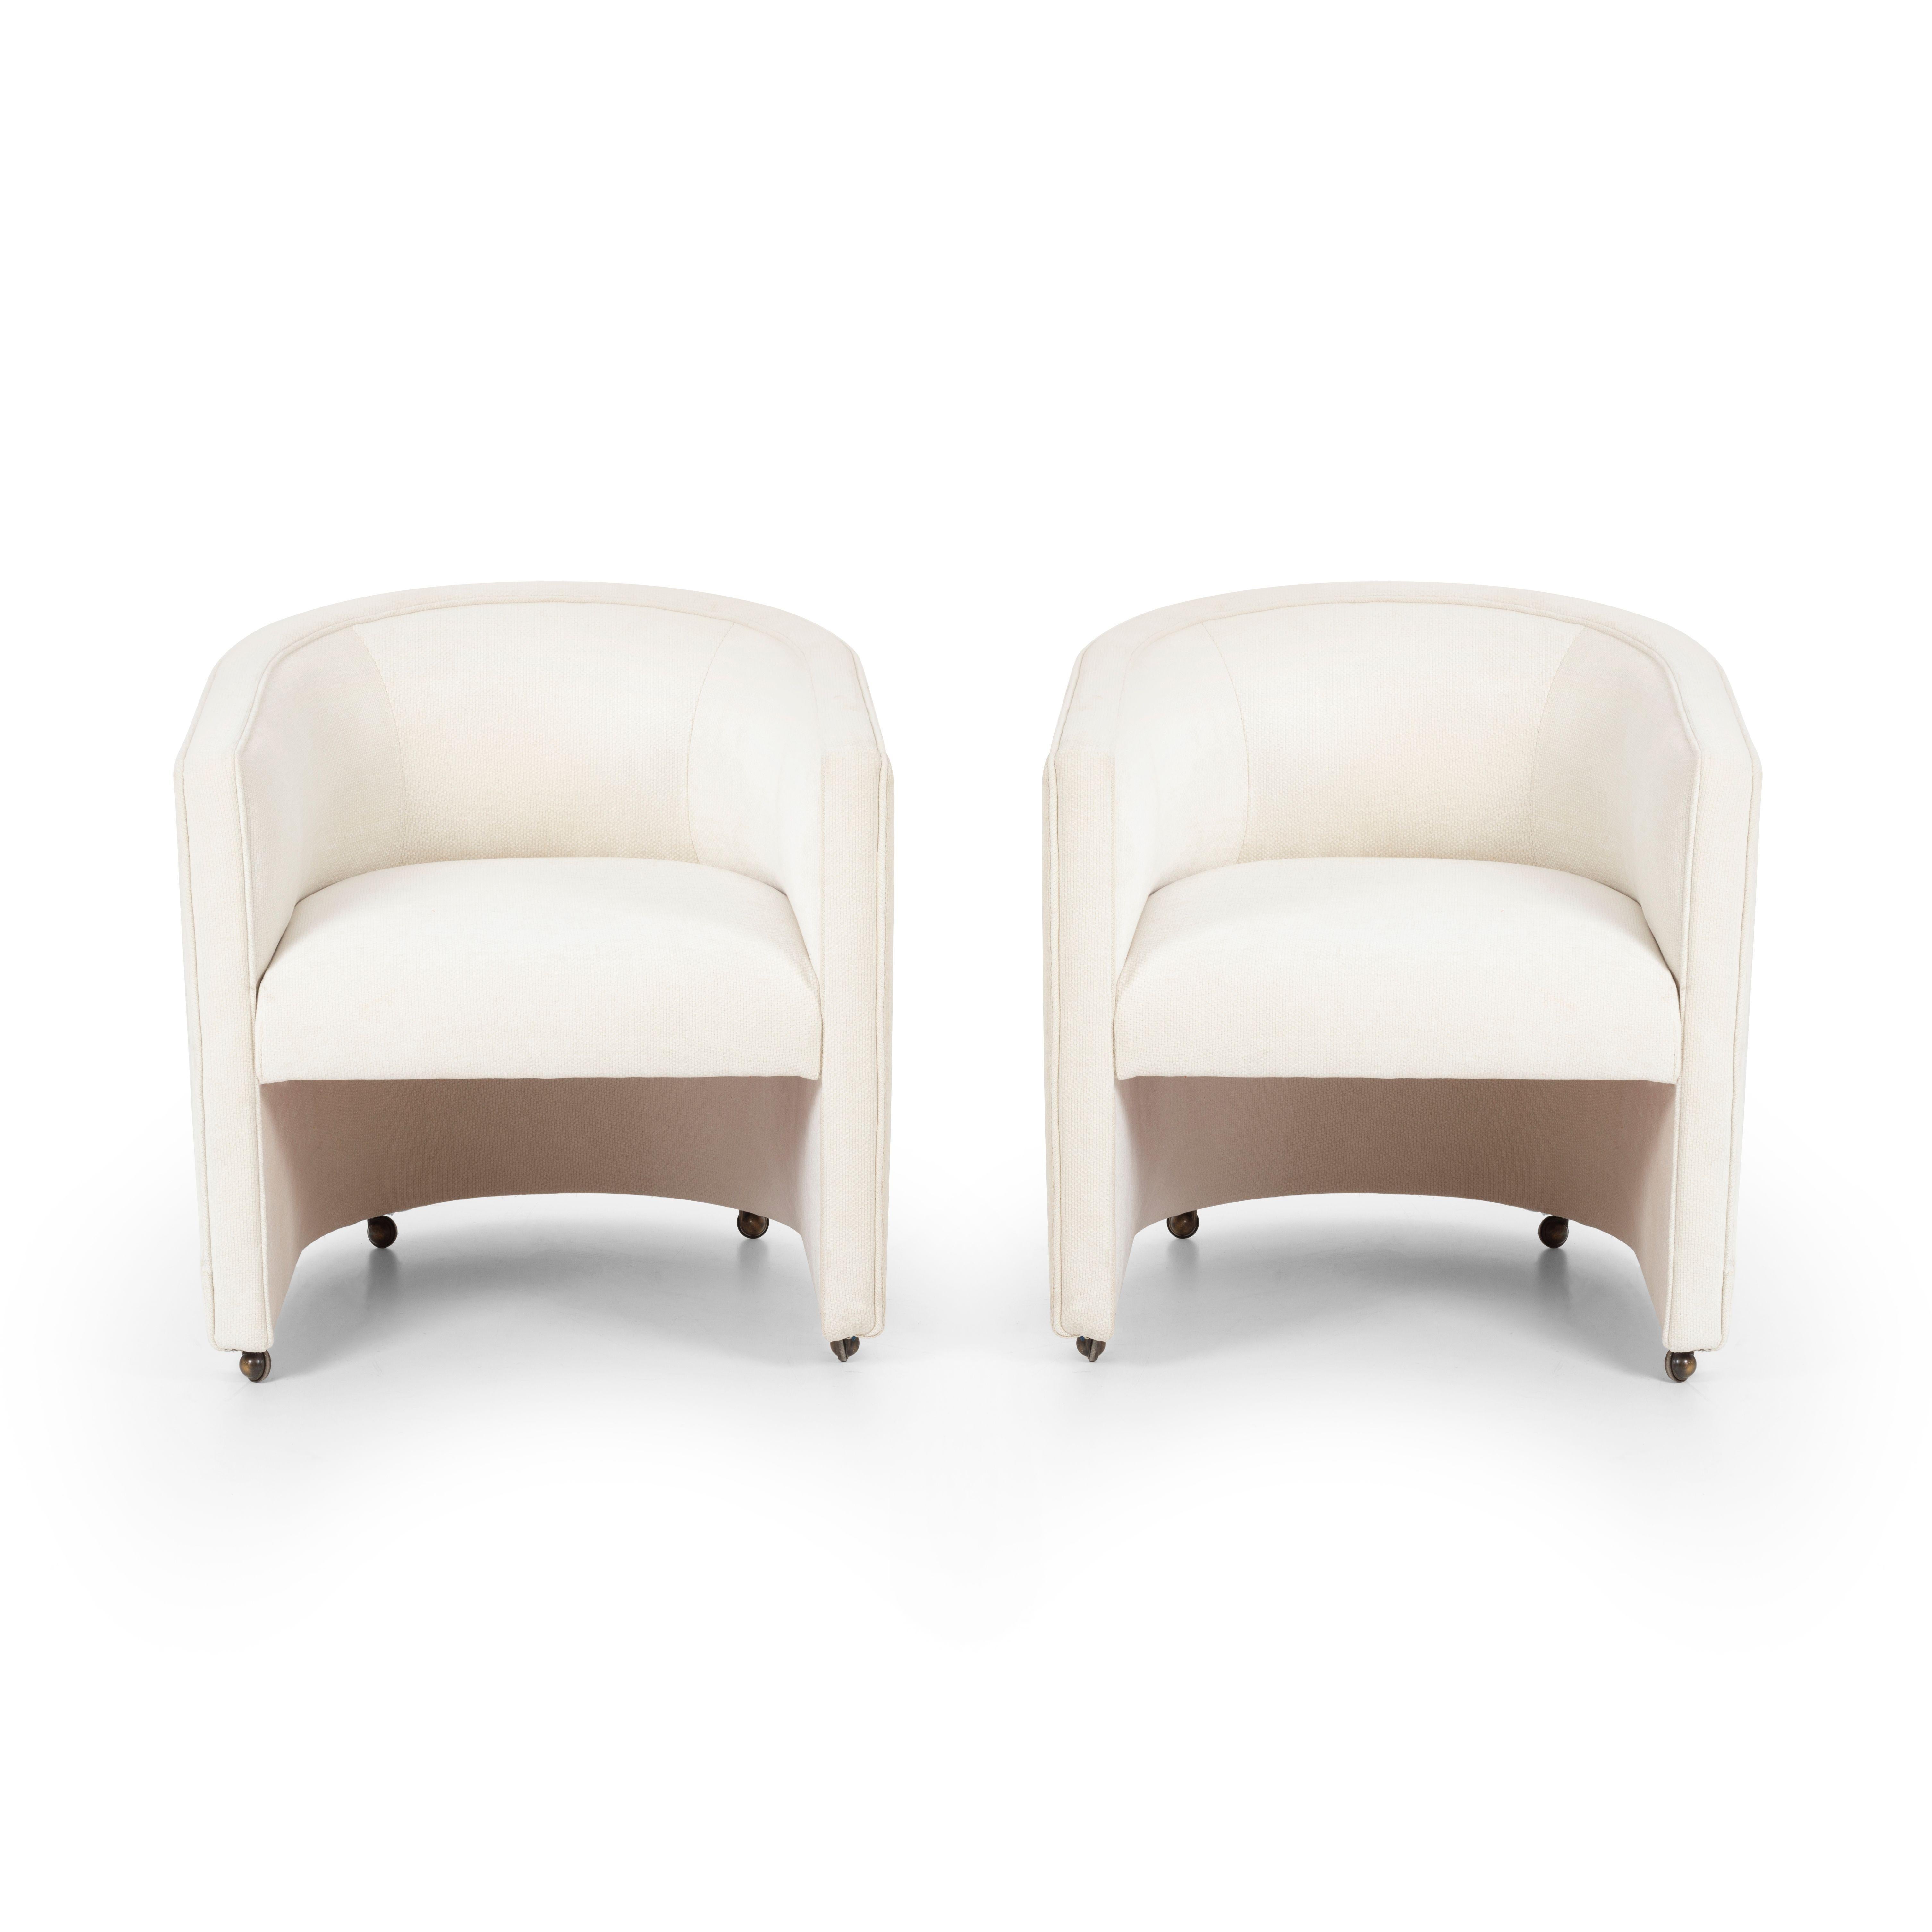 Milo Baughman-Sessel im Stil von Loungesesseln auf abnehmbaren Rädern, neu gepolstert mit Great Plains Baumwoll-Poly-Stoff und orangefarbenen Glanzpunkten, Sitzhöhe 19 Zoll.